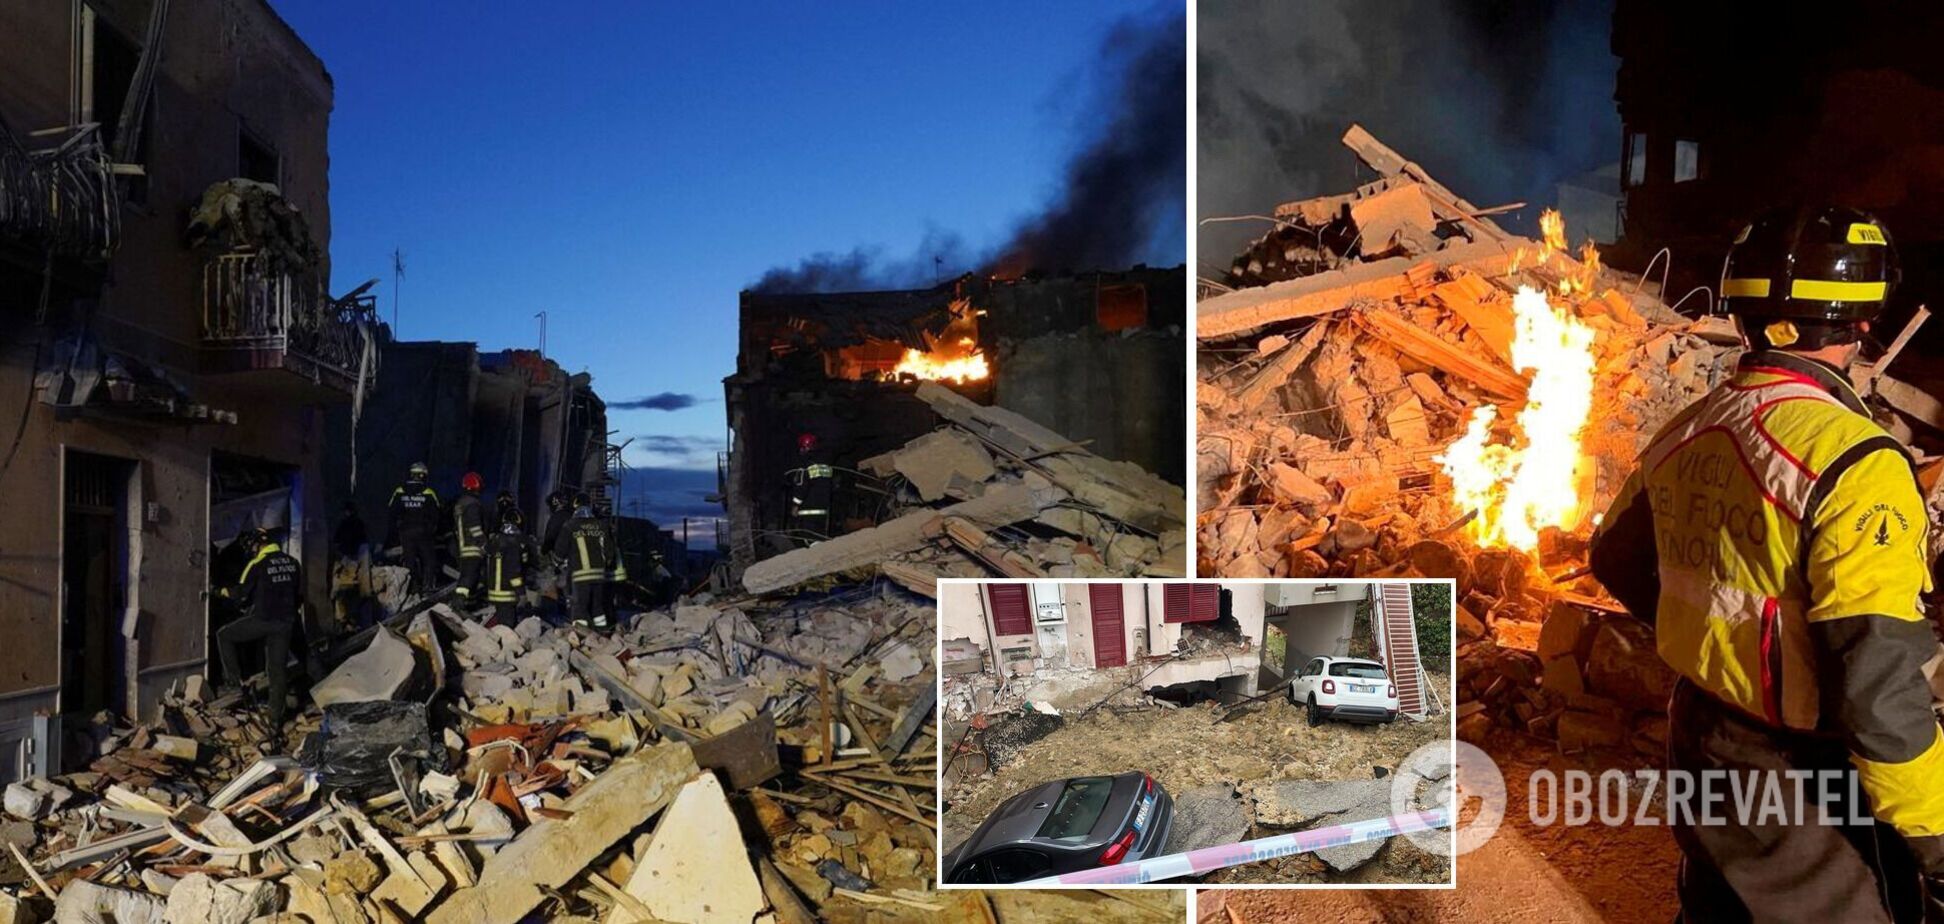 В Італії внаслідок вибуху обвалилися будинки: четверо людей загинули, пошуки зниклих продовжуються. Фото і відео